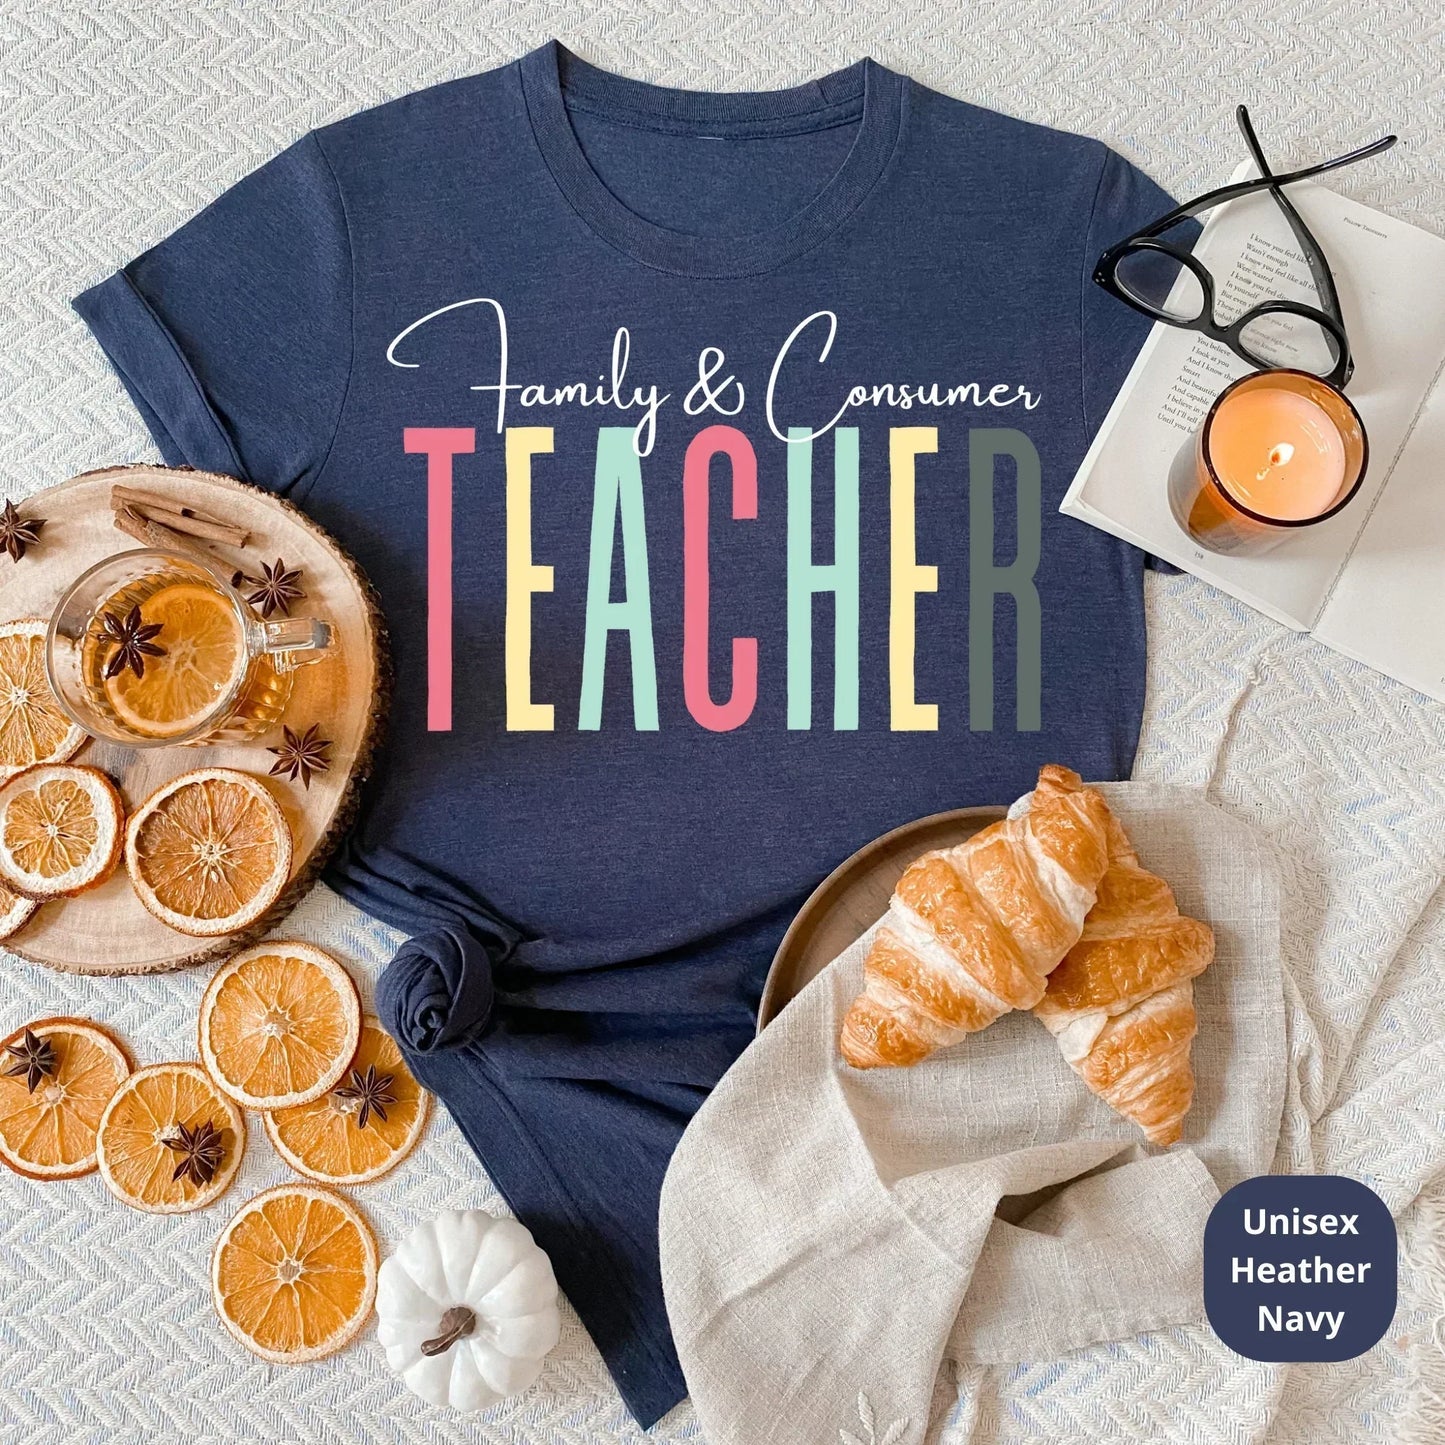 FCS Teacher Shirt, Family and consumer Teacher Shirt